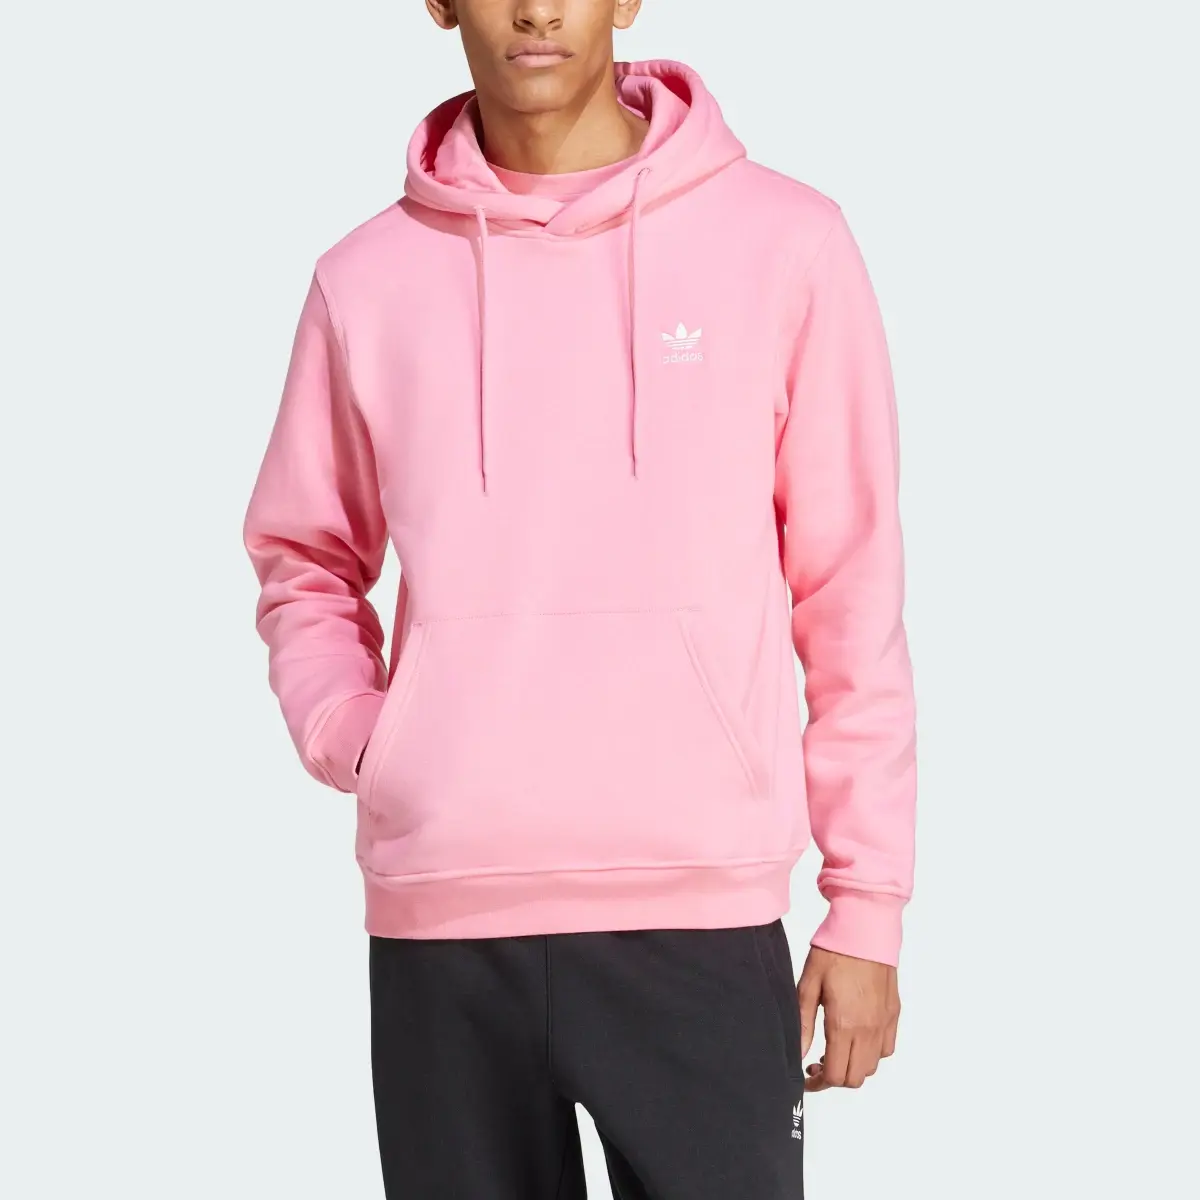 Adidas Pink Hoodie. 1